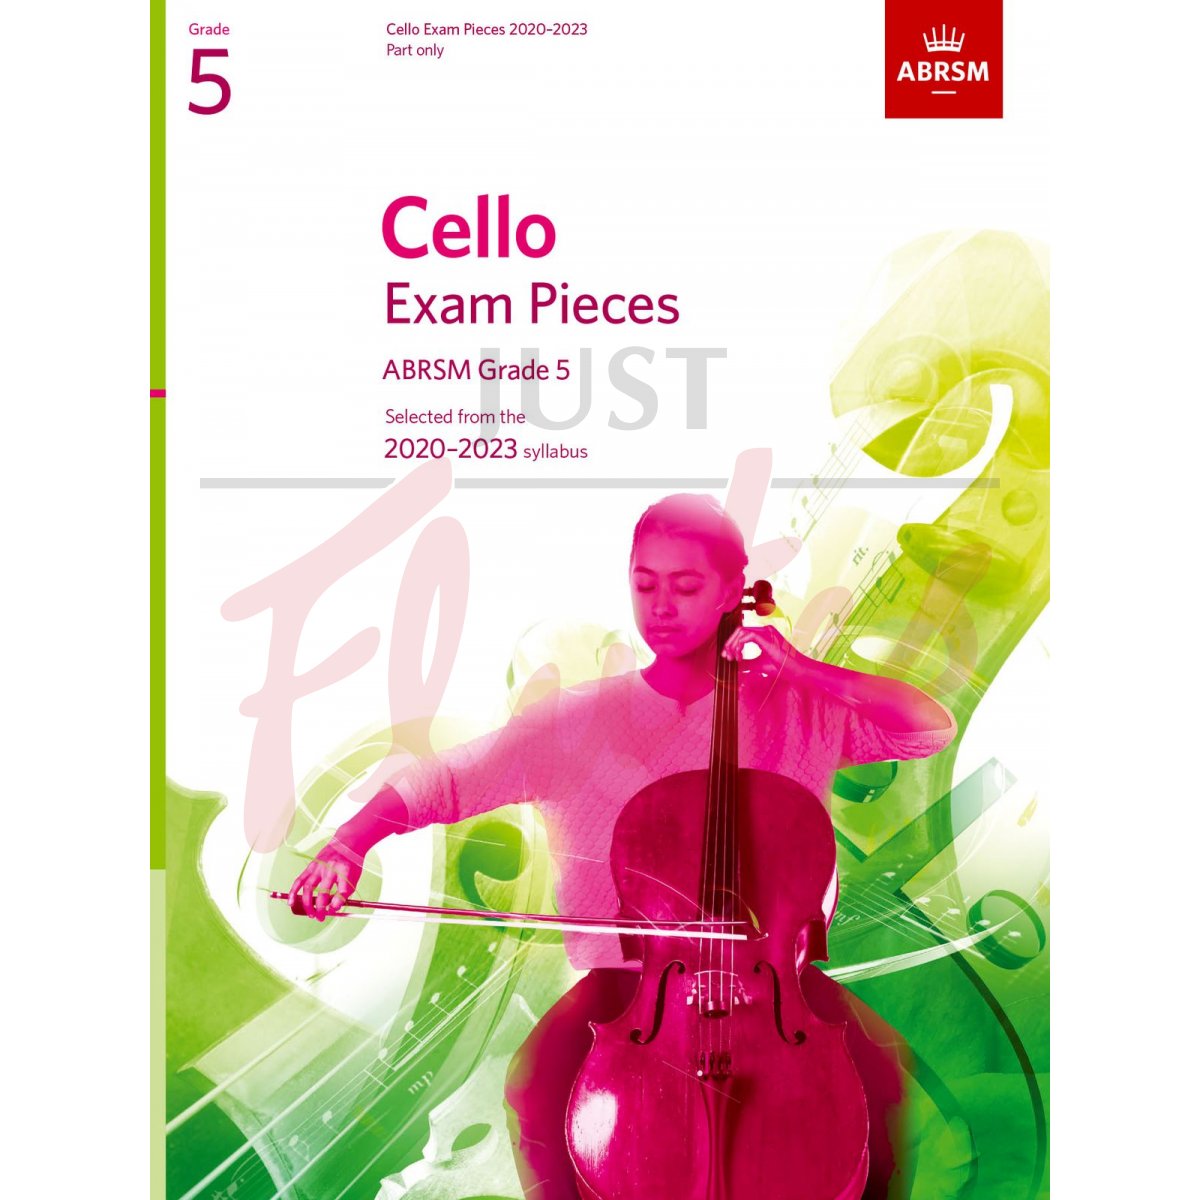 Cello Exam Pieces 2020-2023, Grade 5 [Part Only]